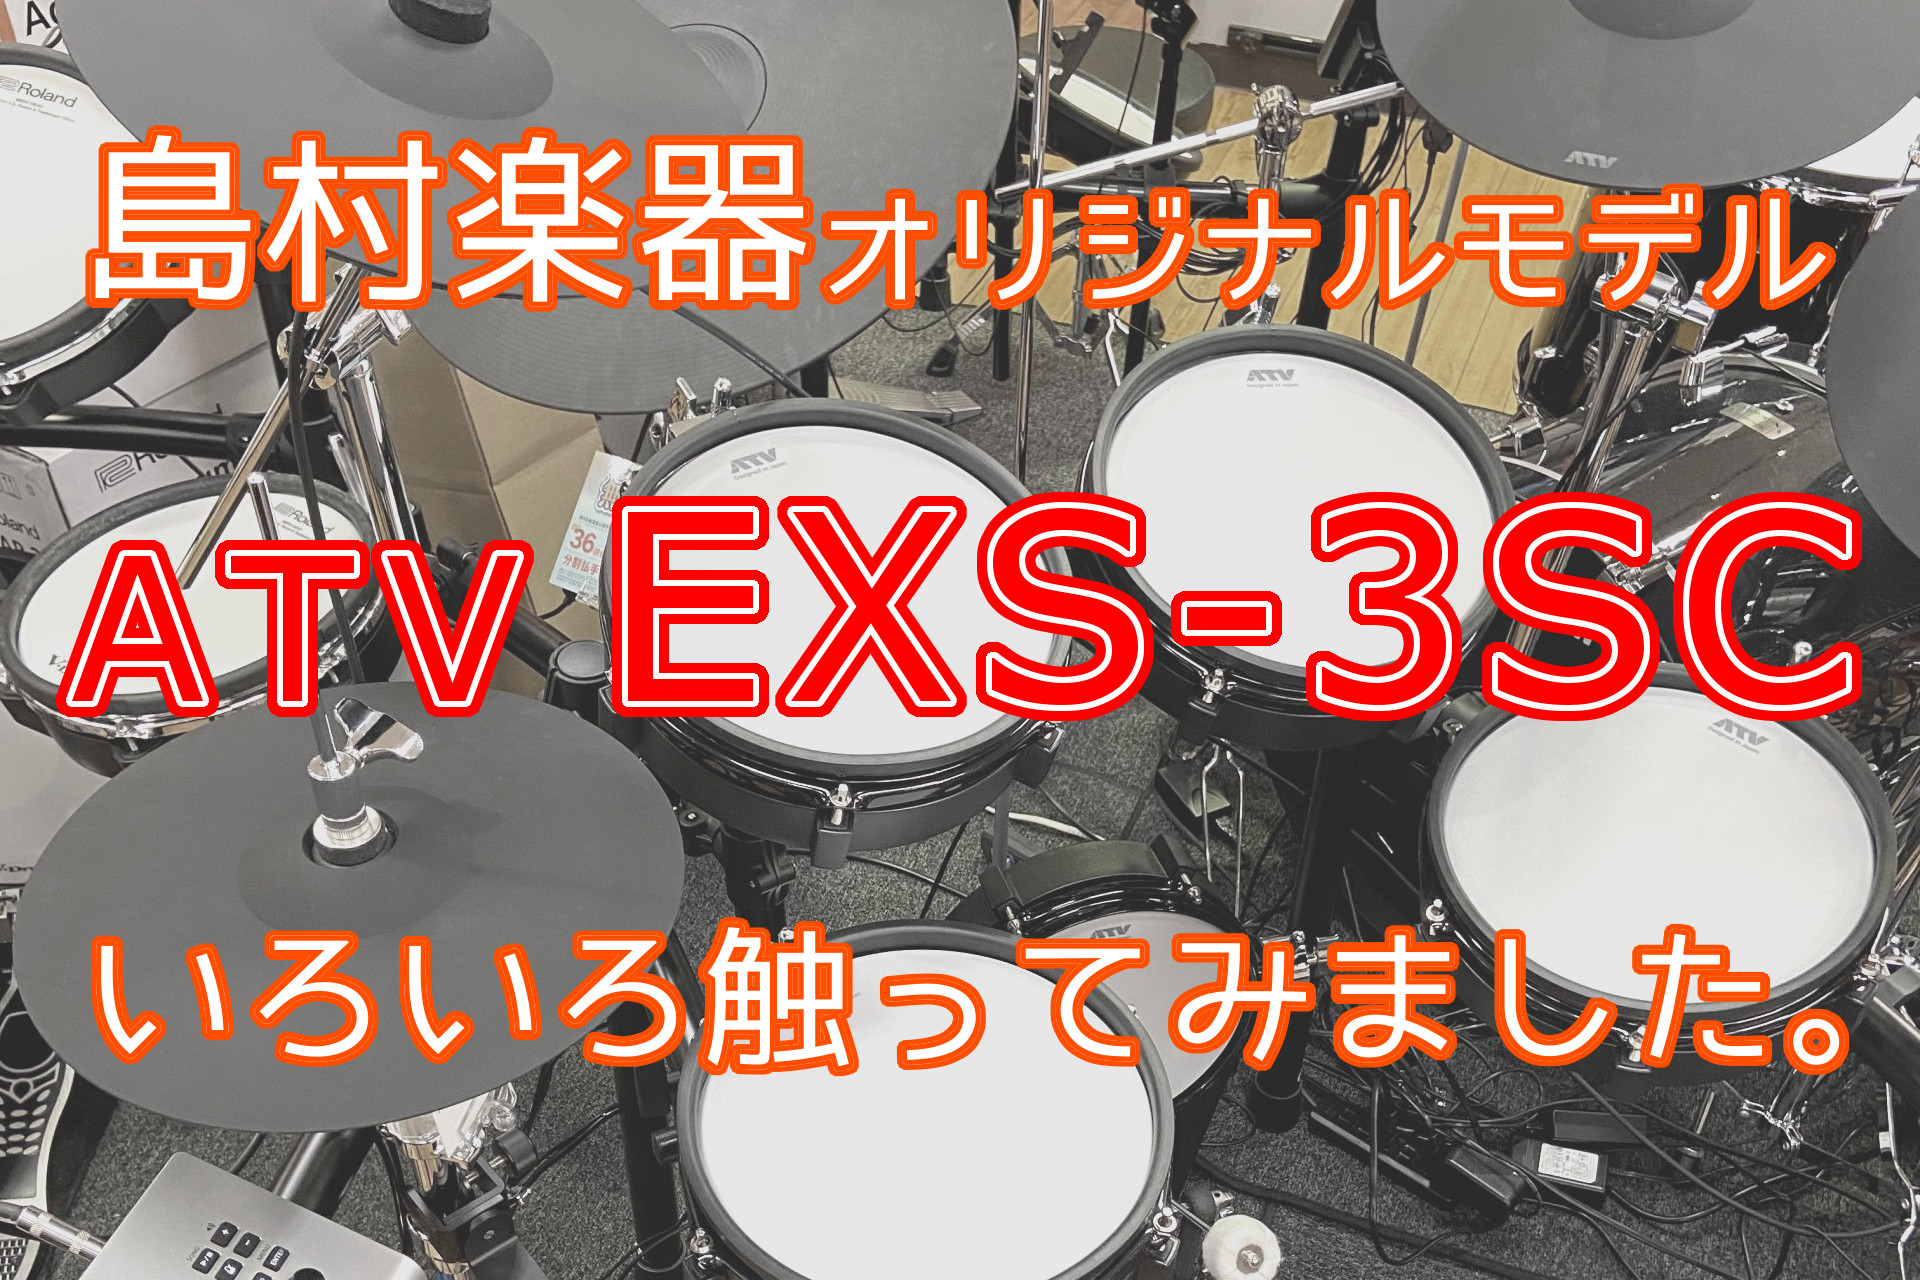 ATV 「EXS-3」の島村楽器のオリジナルモデル、「EXS-3SC」、いろいろ触ってみました。